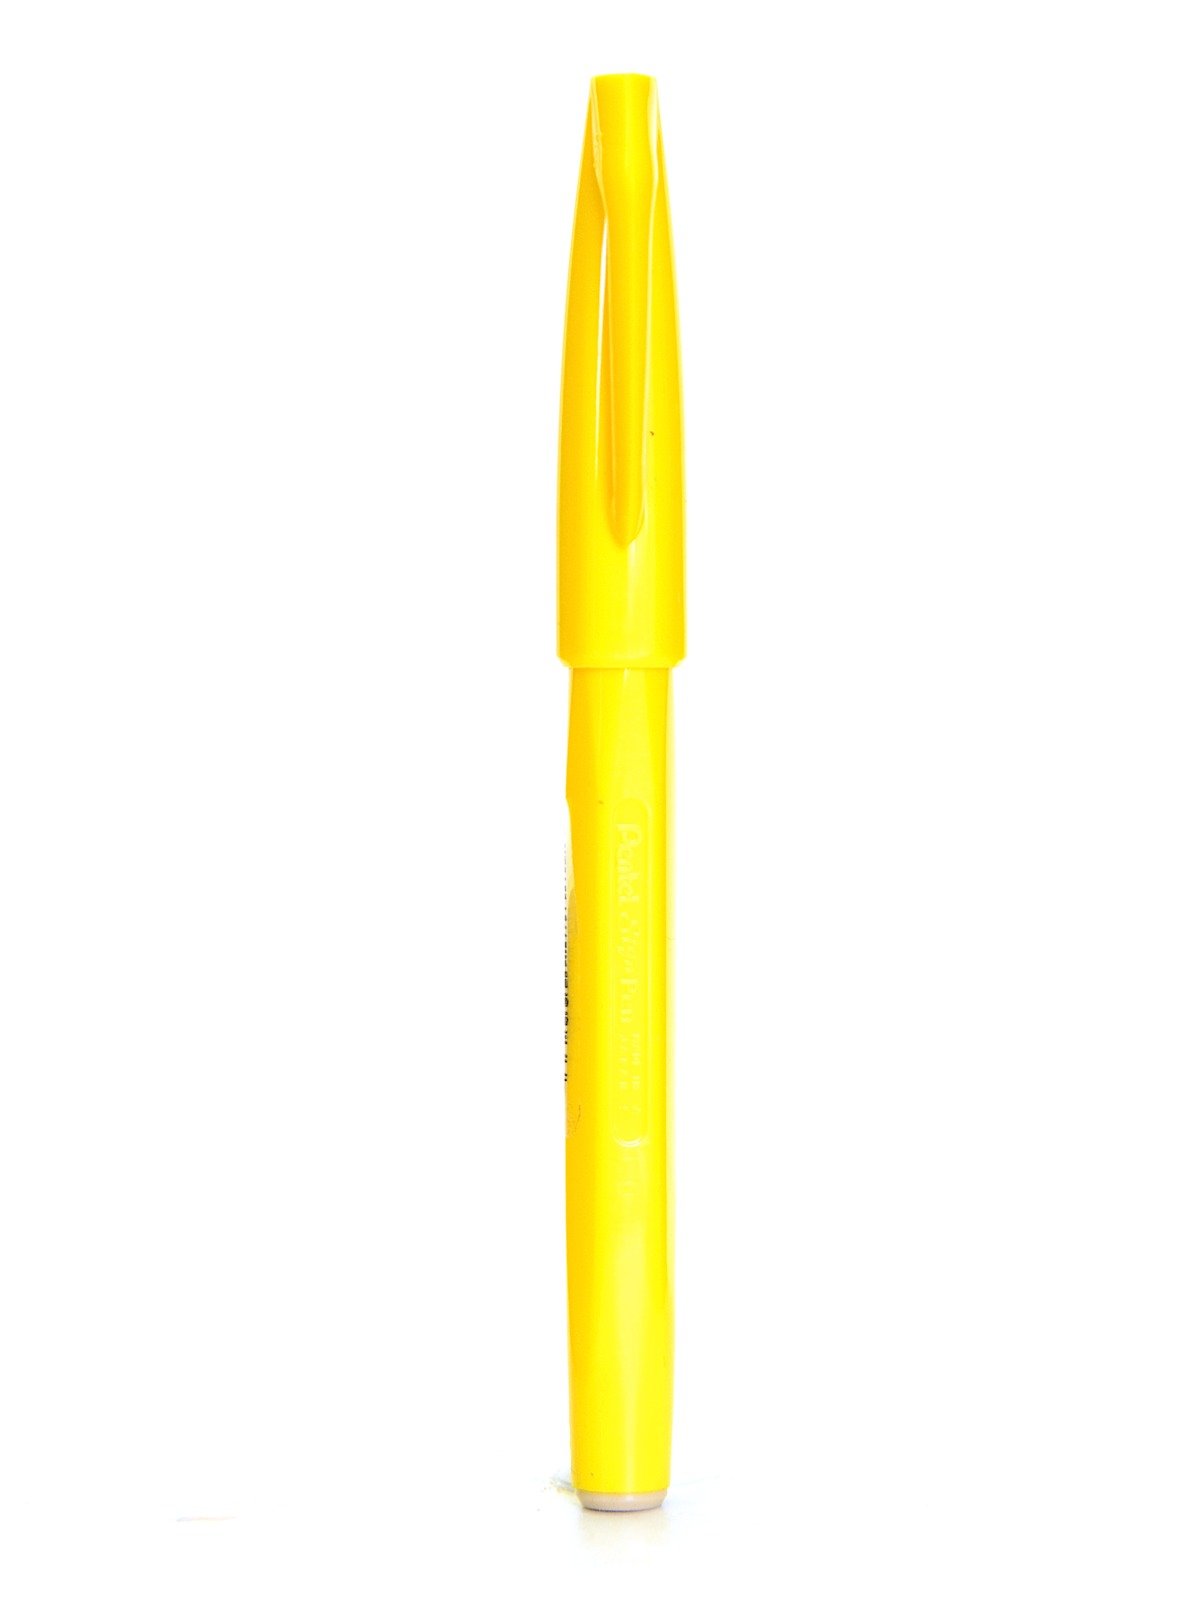 Pentel ProGear Paint Marker, Yellow Ink, 2-pks – Pentel of America